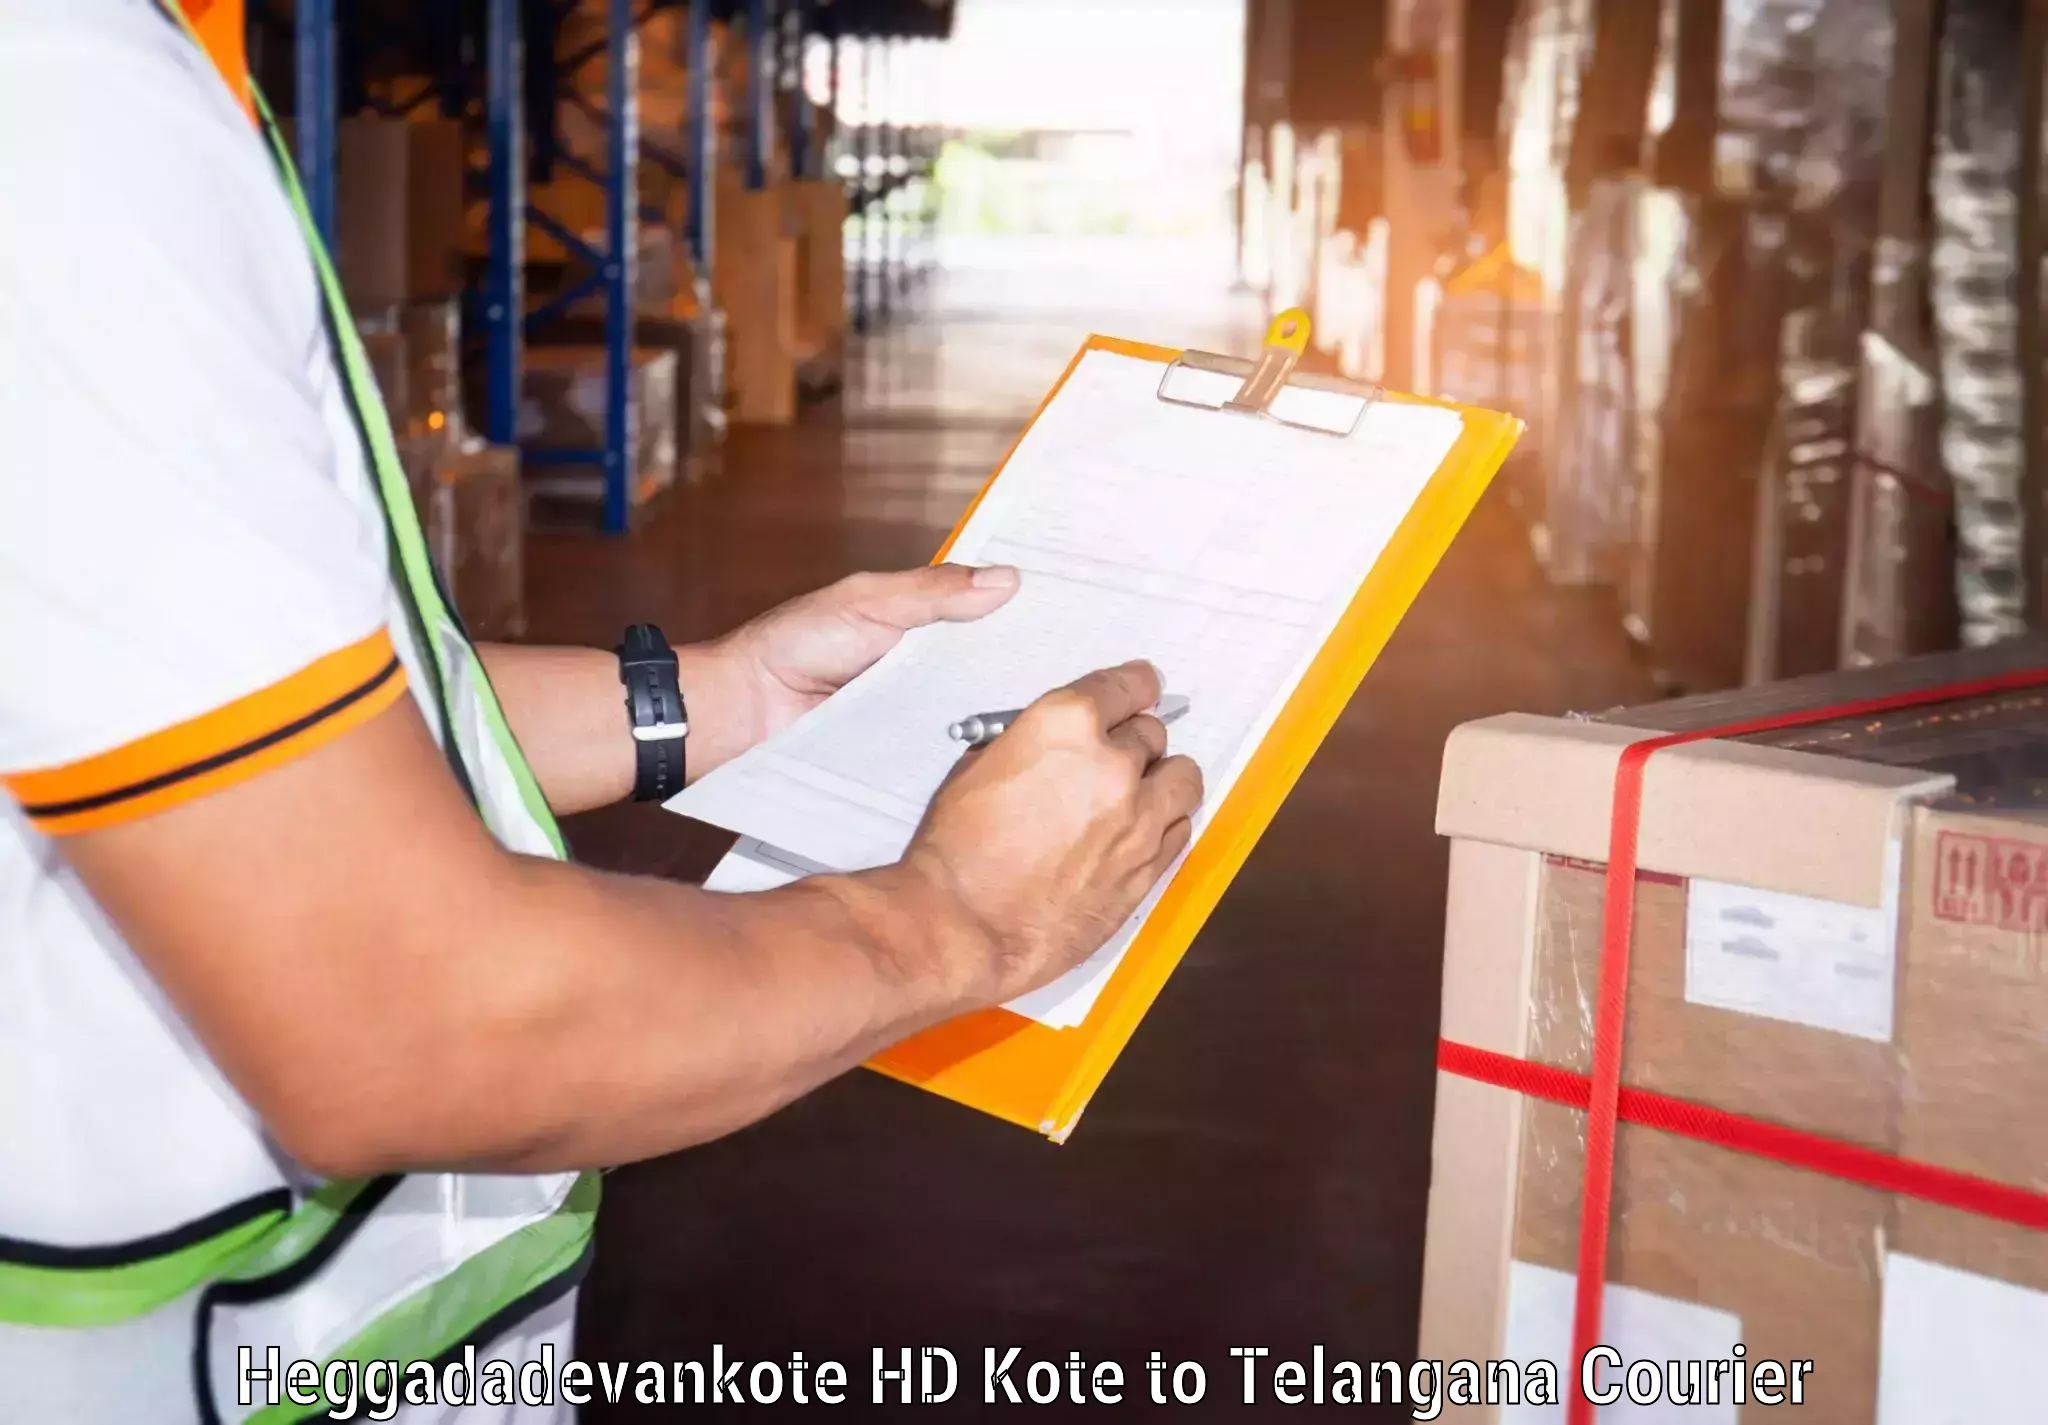 High-priority parcel service Heggadadevankote HD Kote to Tadoor